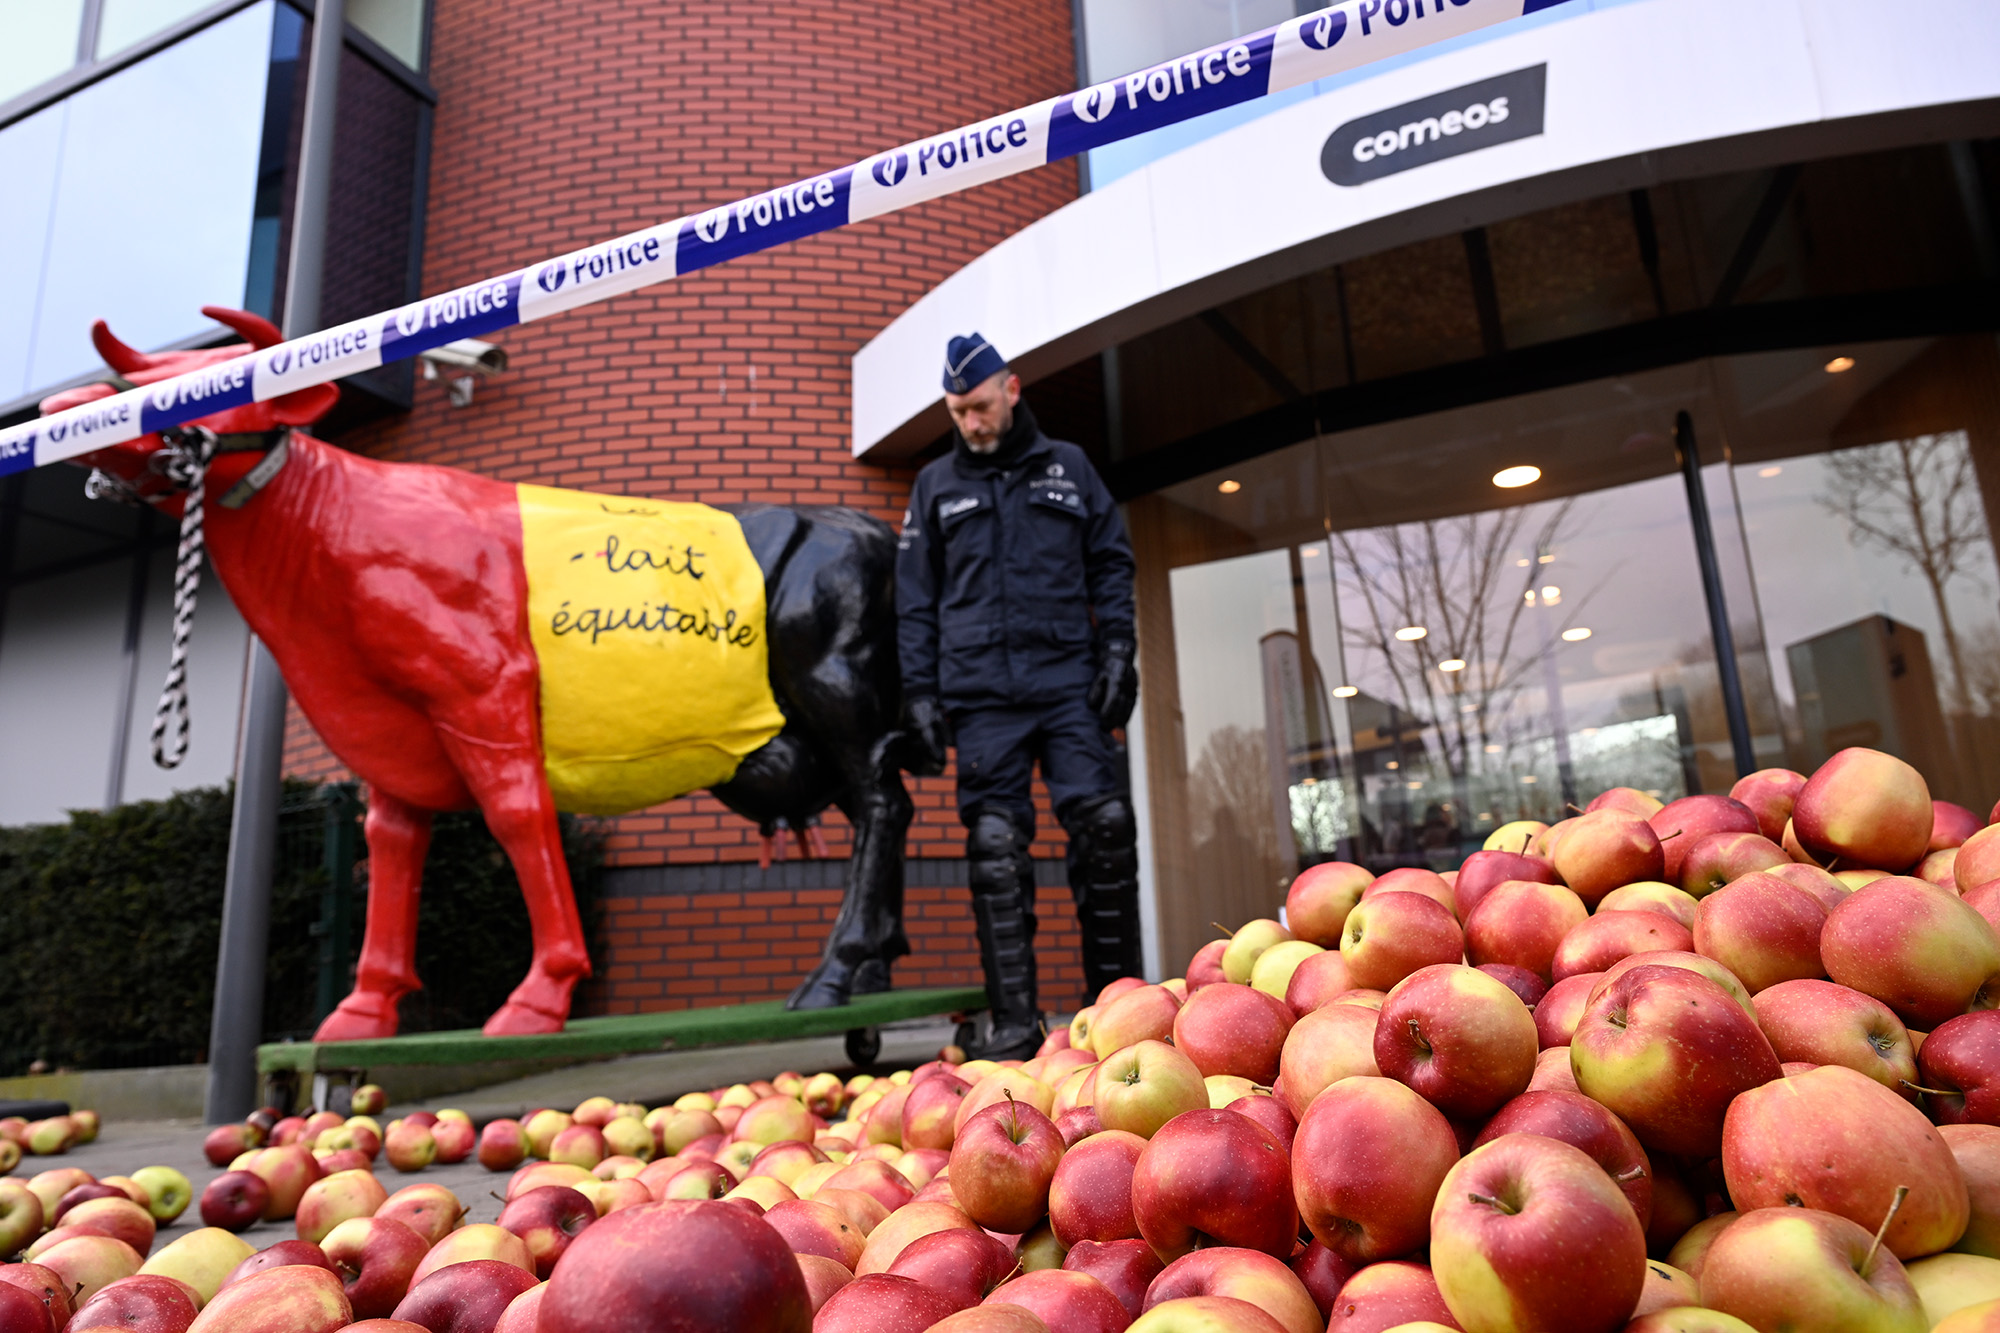 Protestkundgebung vor dem Sitz des Handelsverbandes Comeos in Brüssel (Bild: Laurie Dieffembacq/Belga)